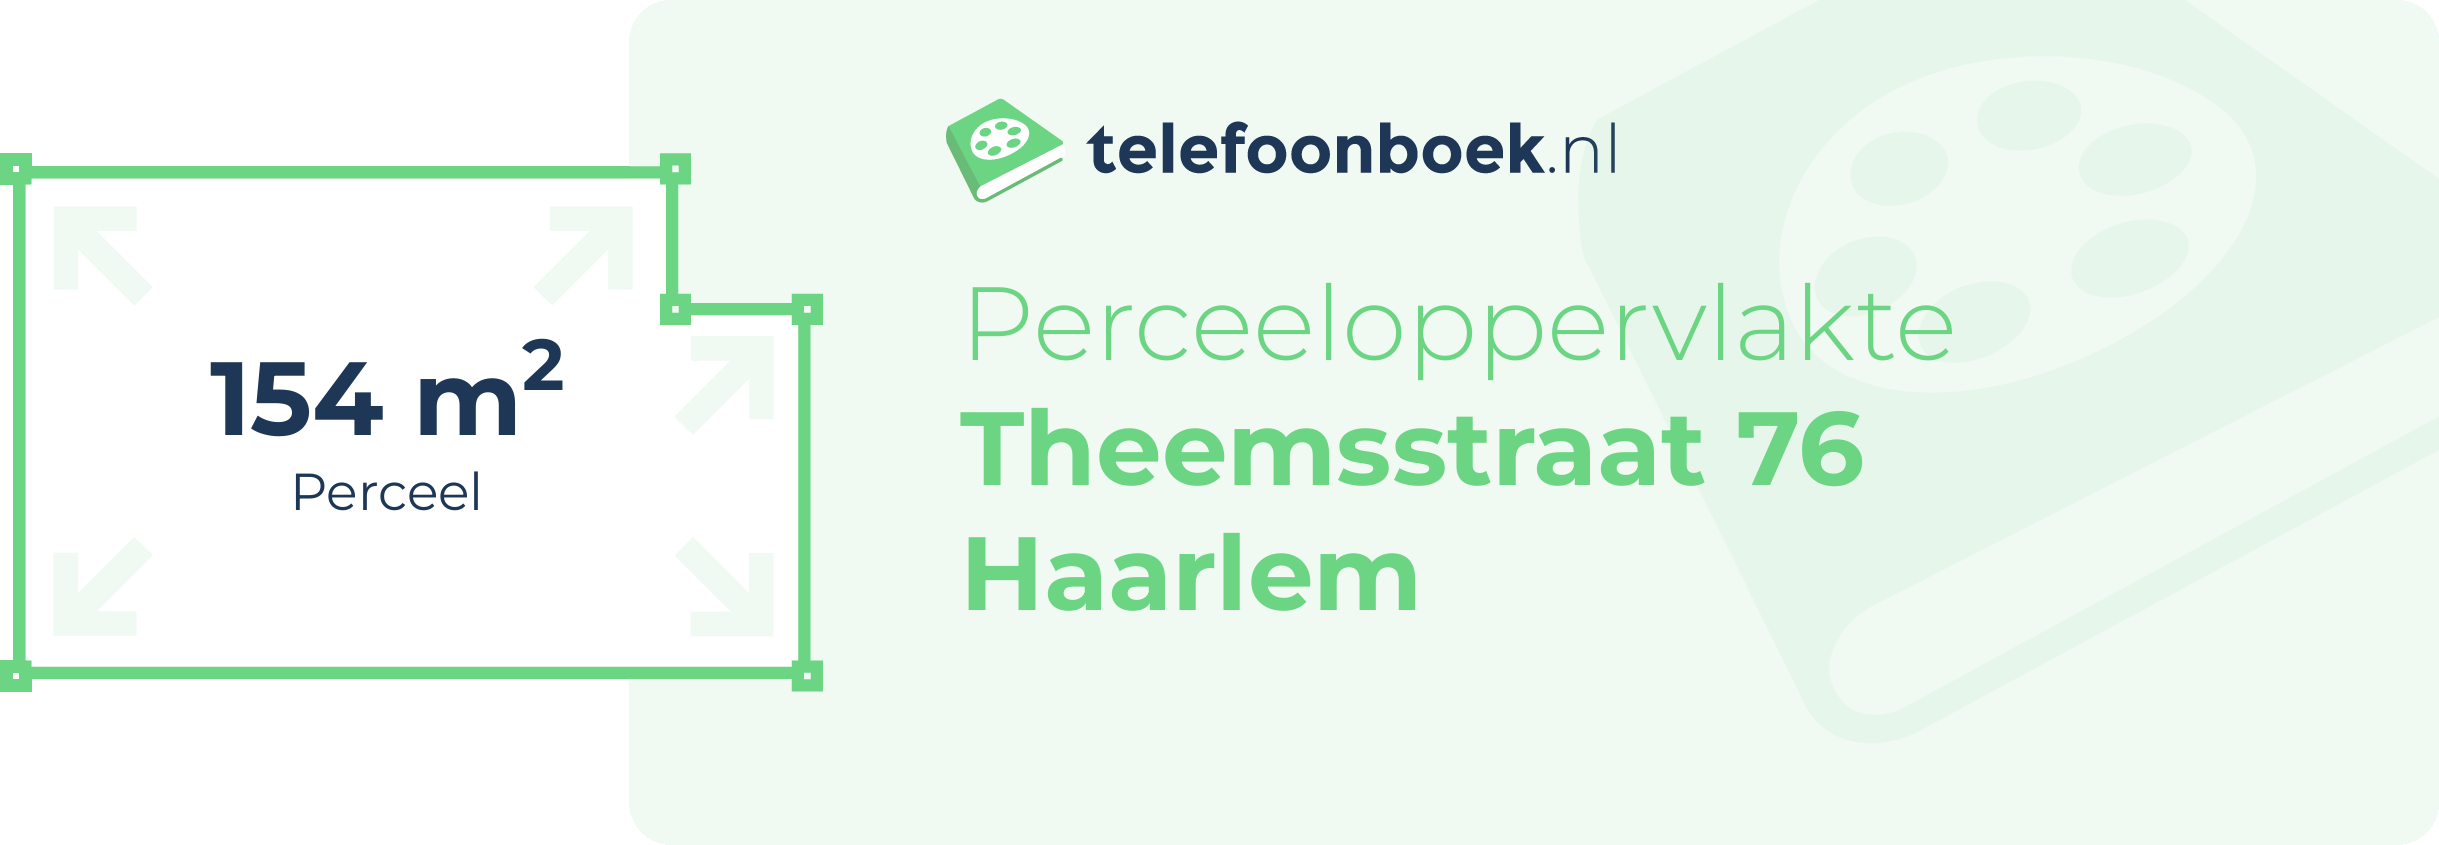 Perceeloppervlakte Theemsstraat 76 Haarlem